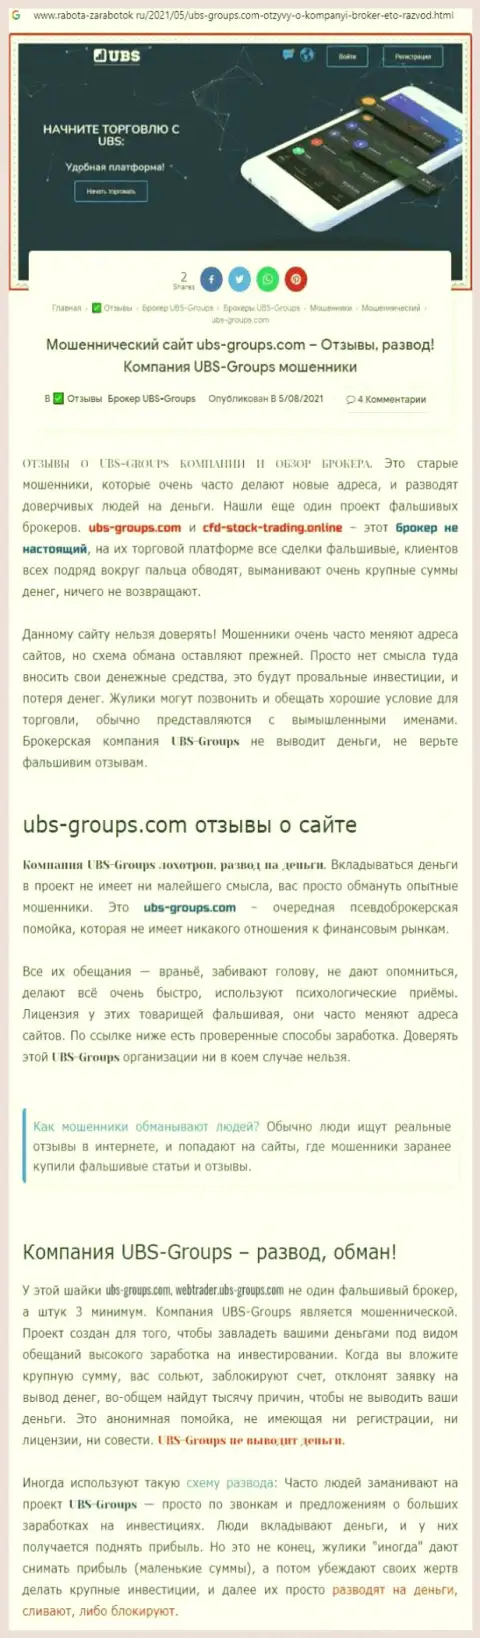 Автор объективного отзыва утверждает, что UBS Groups это МАХИНАТОРЫ !